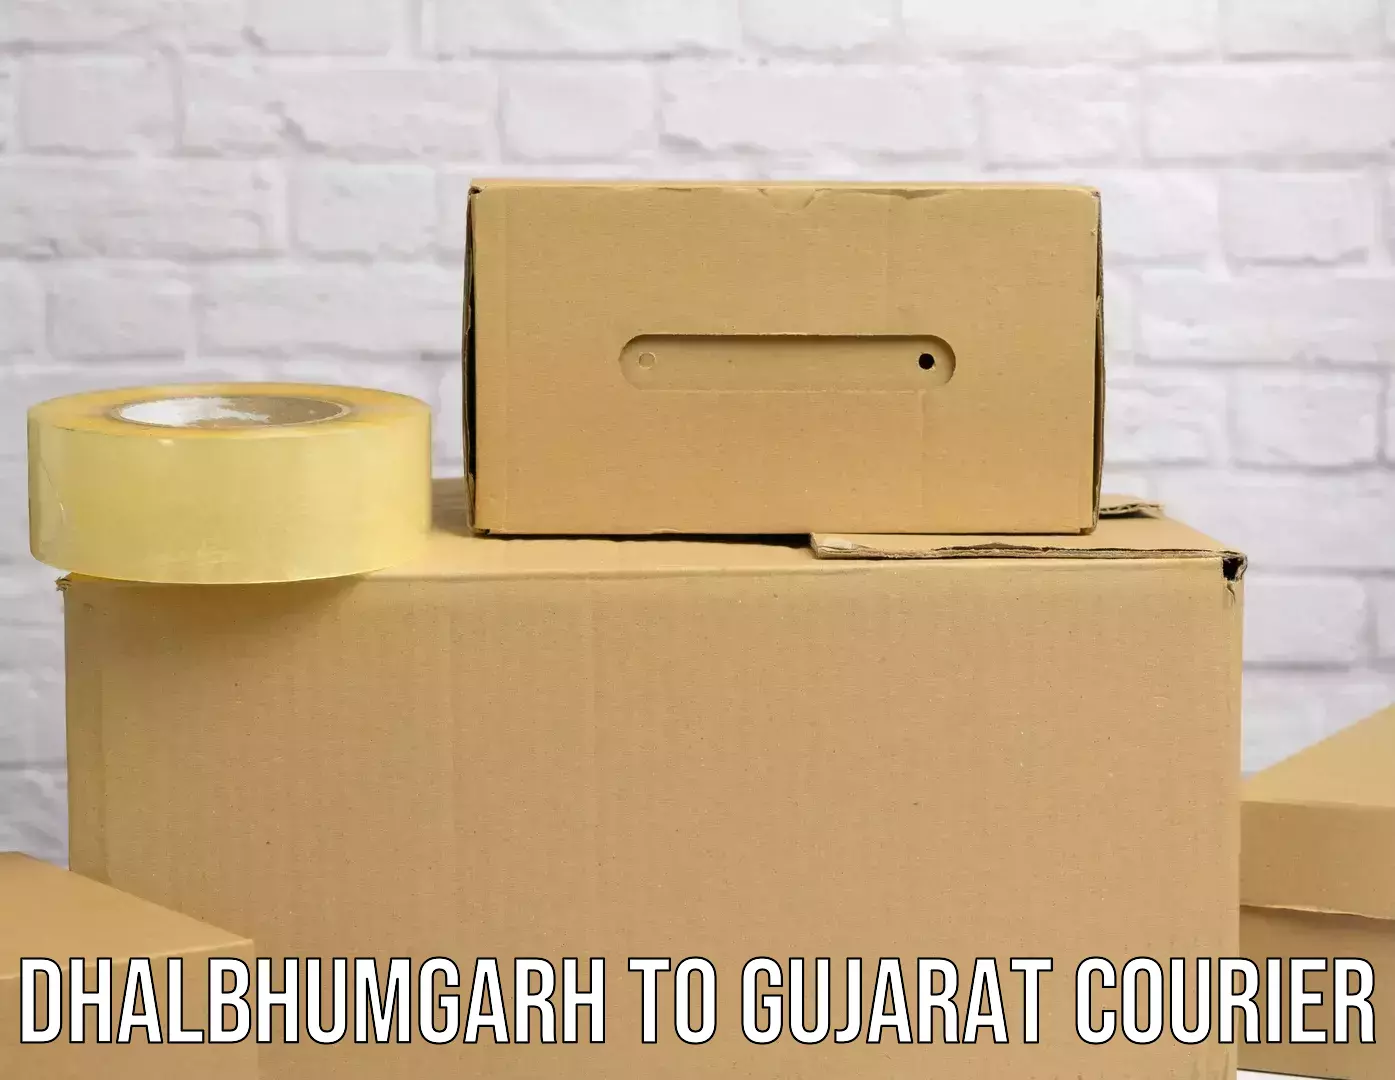 Flexible shipping options Dhalbhumgarh to IIIT Surat